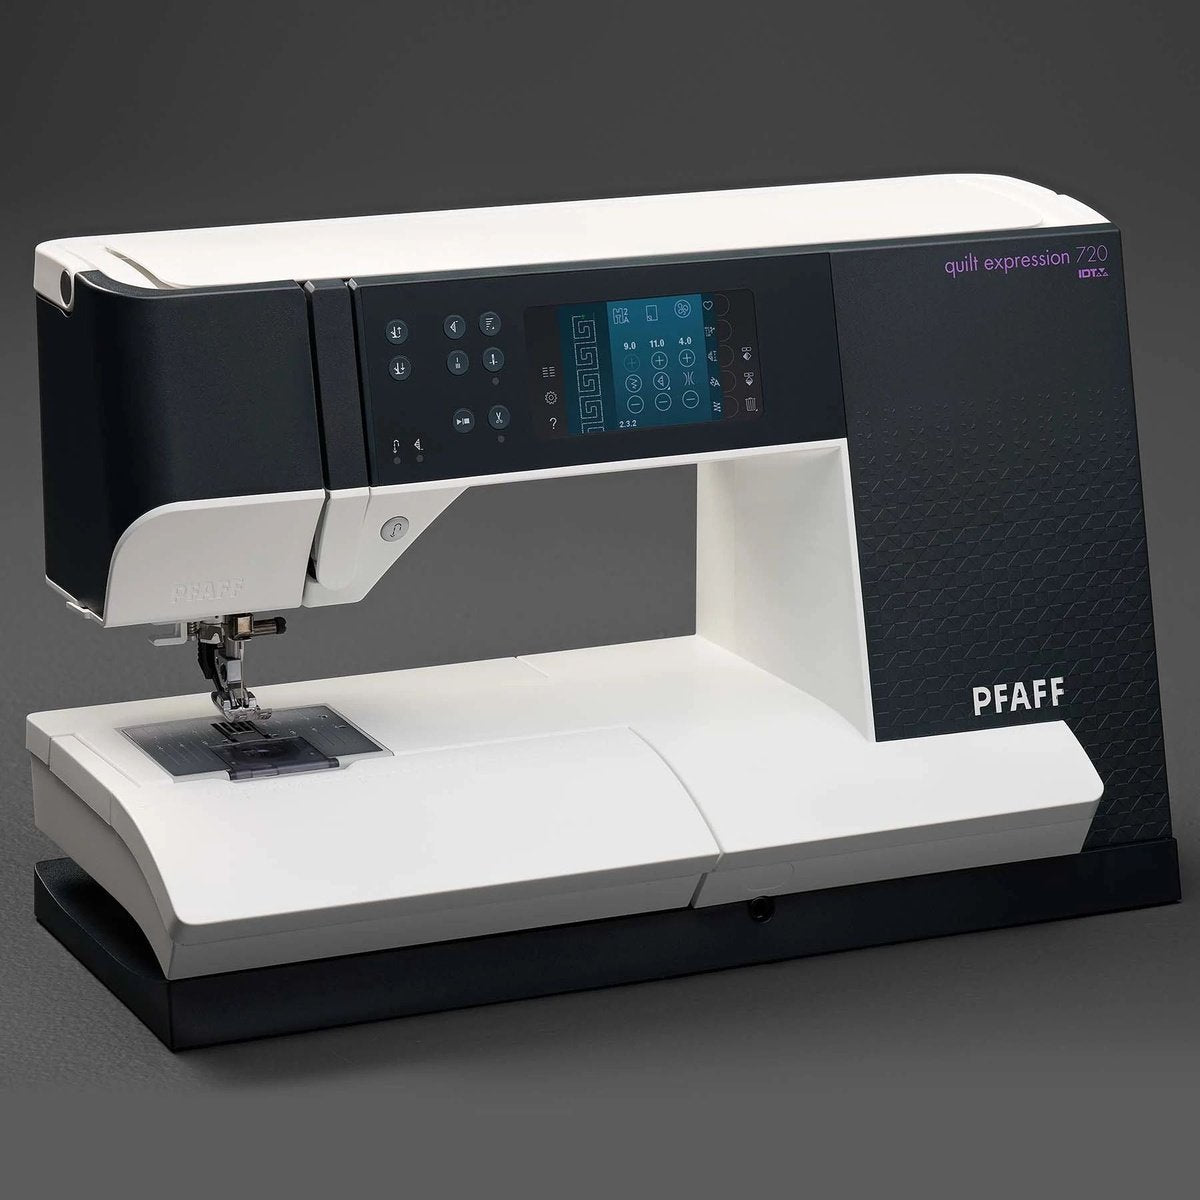 PFAFF® quilt expression 720 Sewing Machine